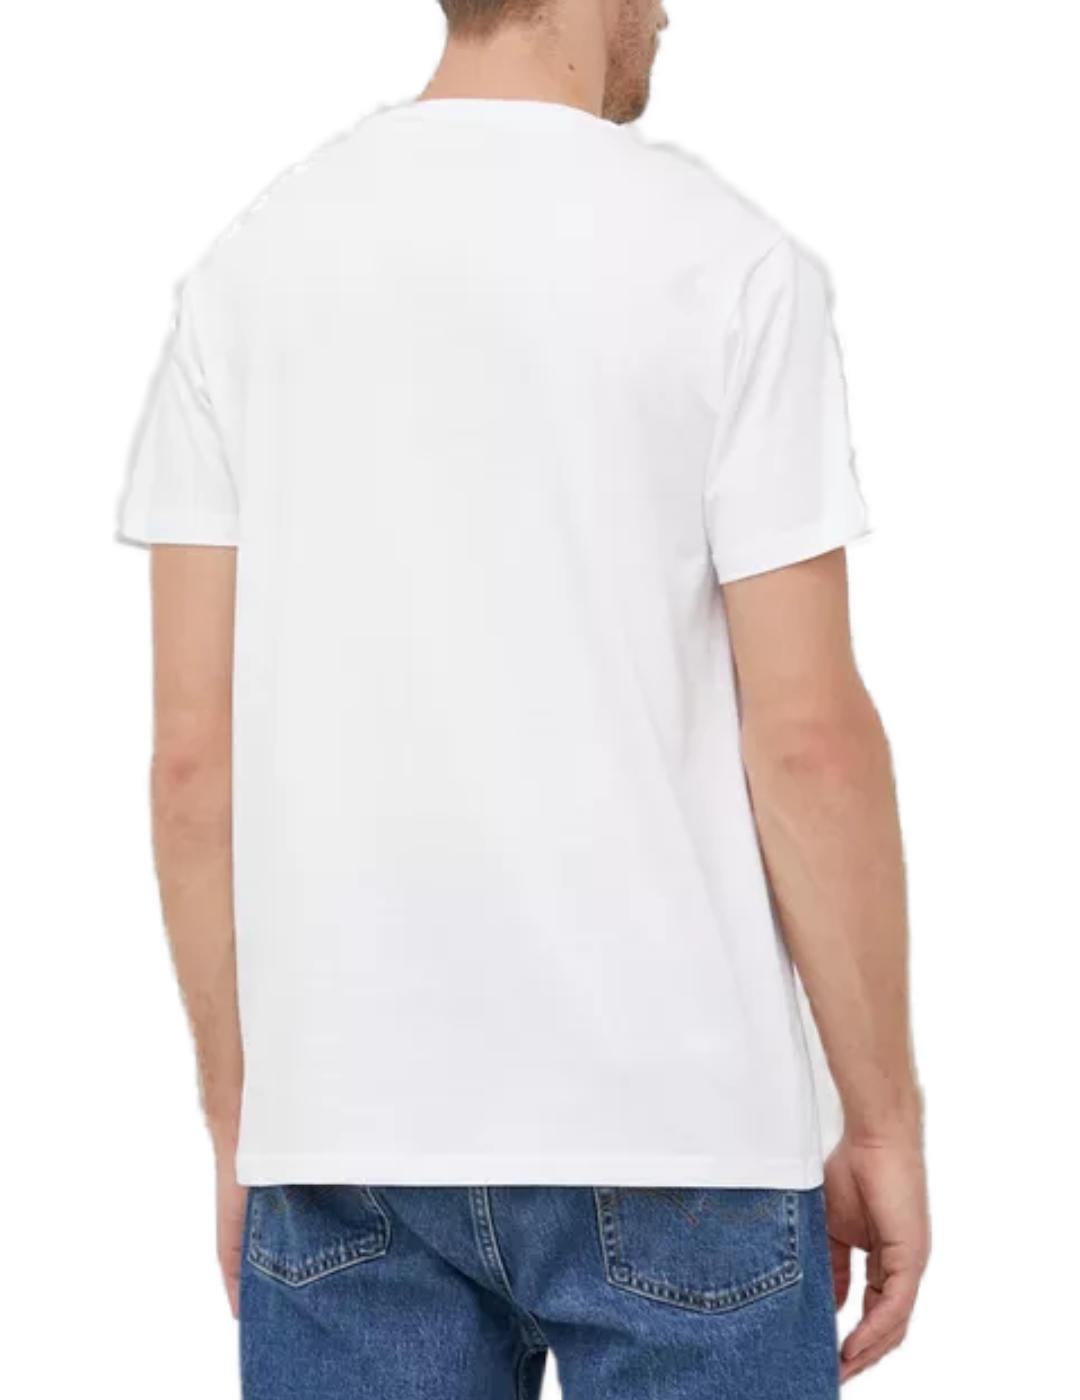 Pack 2 camisetas Guess blanco/azul para hombre-b